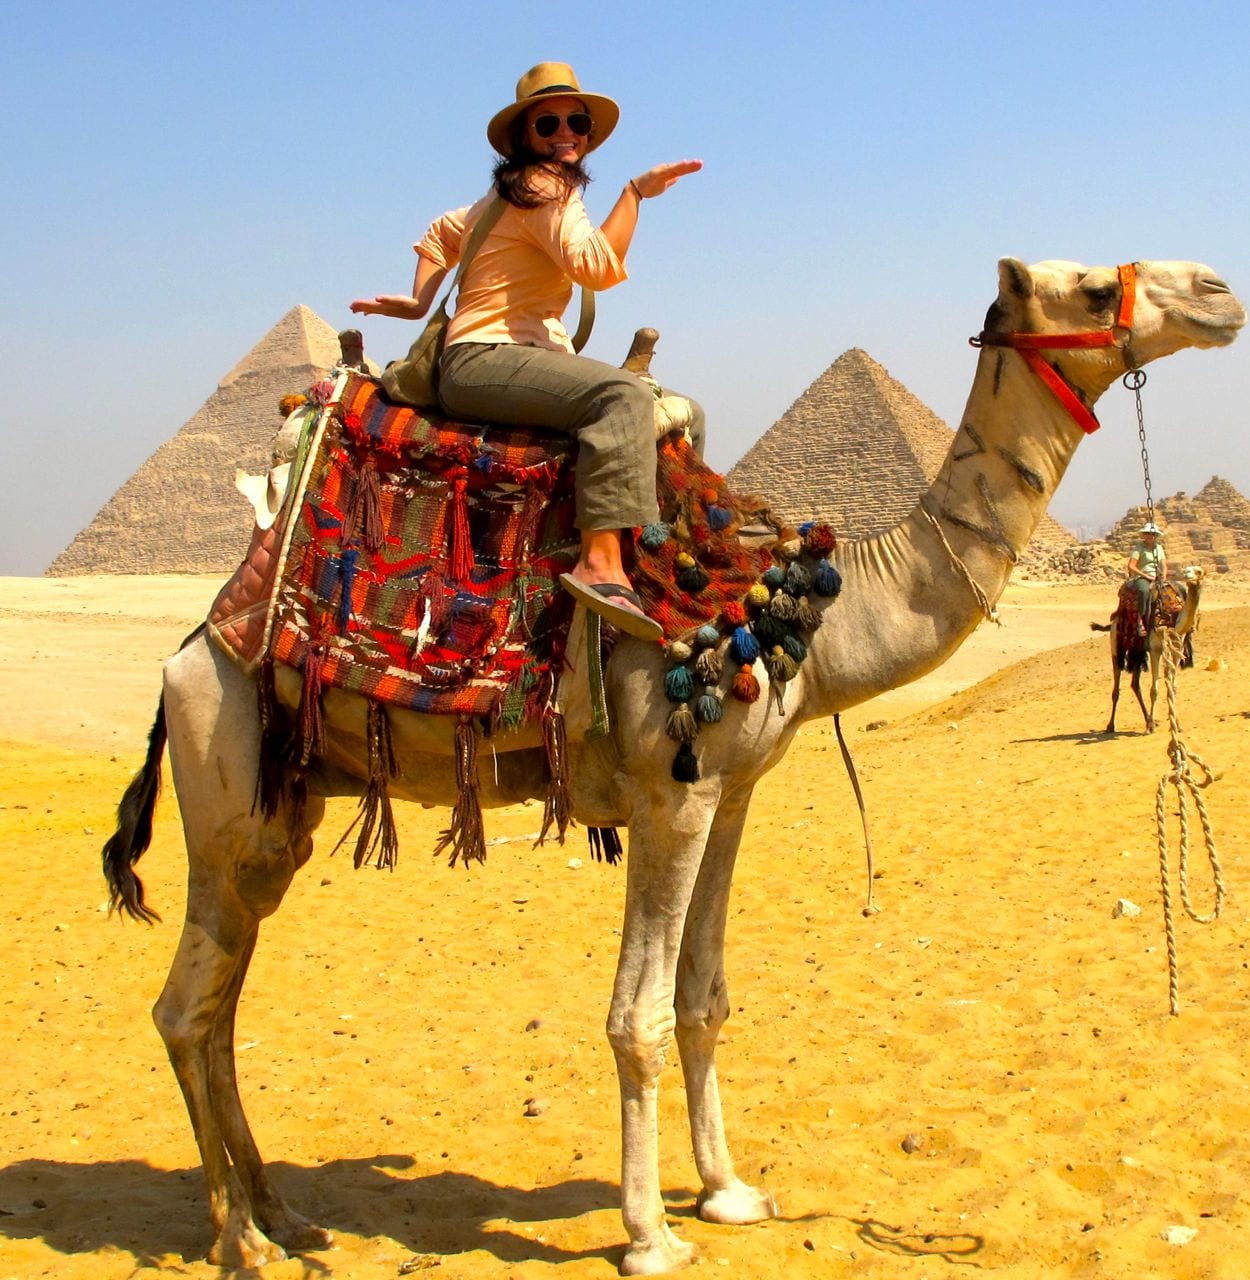 لاول مرة في مصر احجز رحلة الي الهرم لركوب الجمال و الخيول